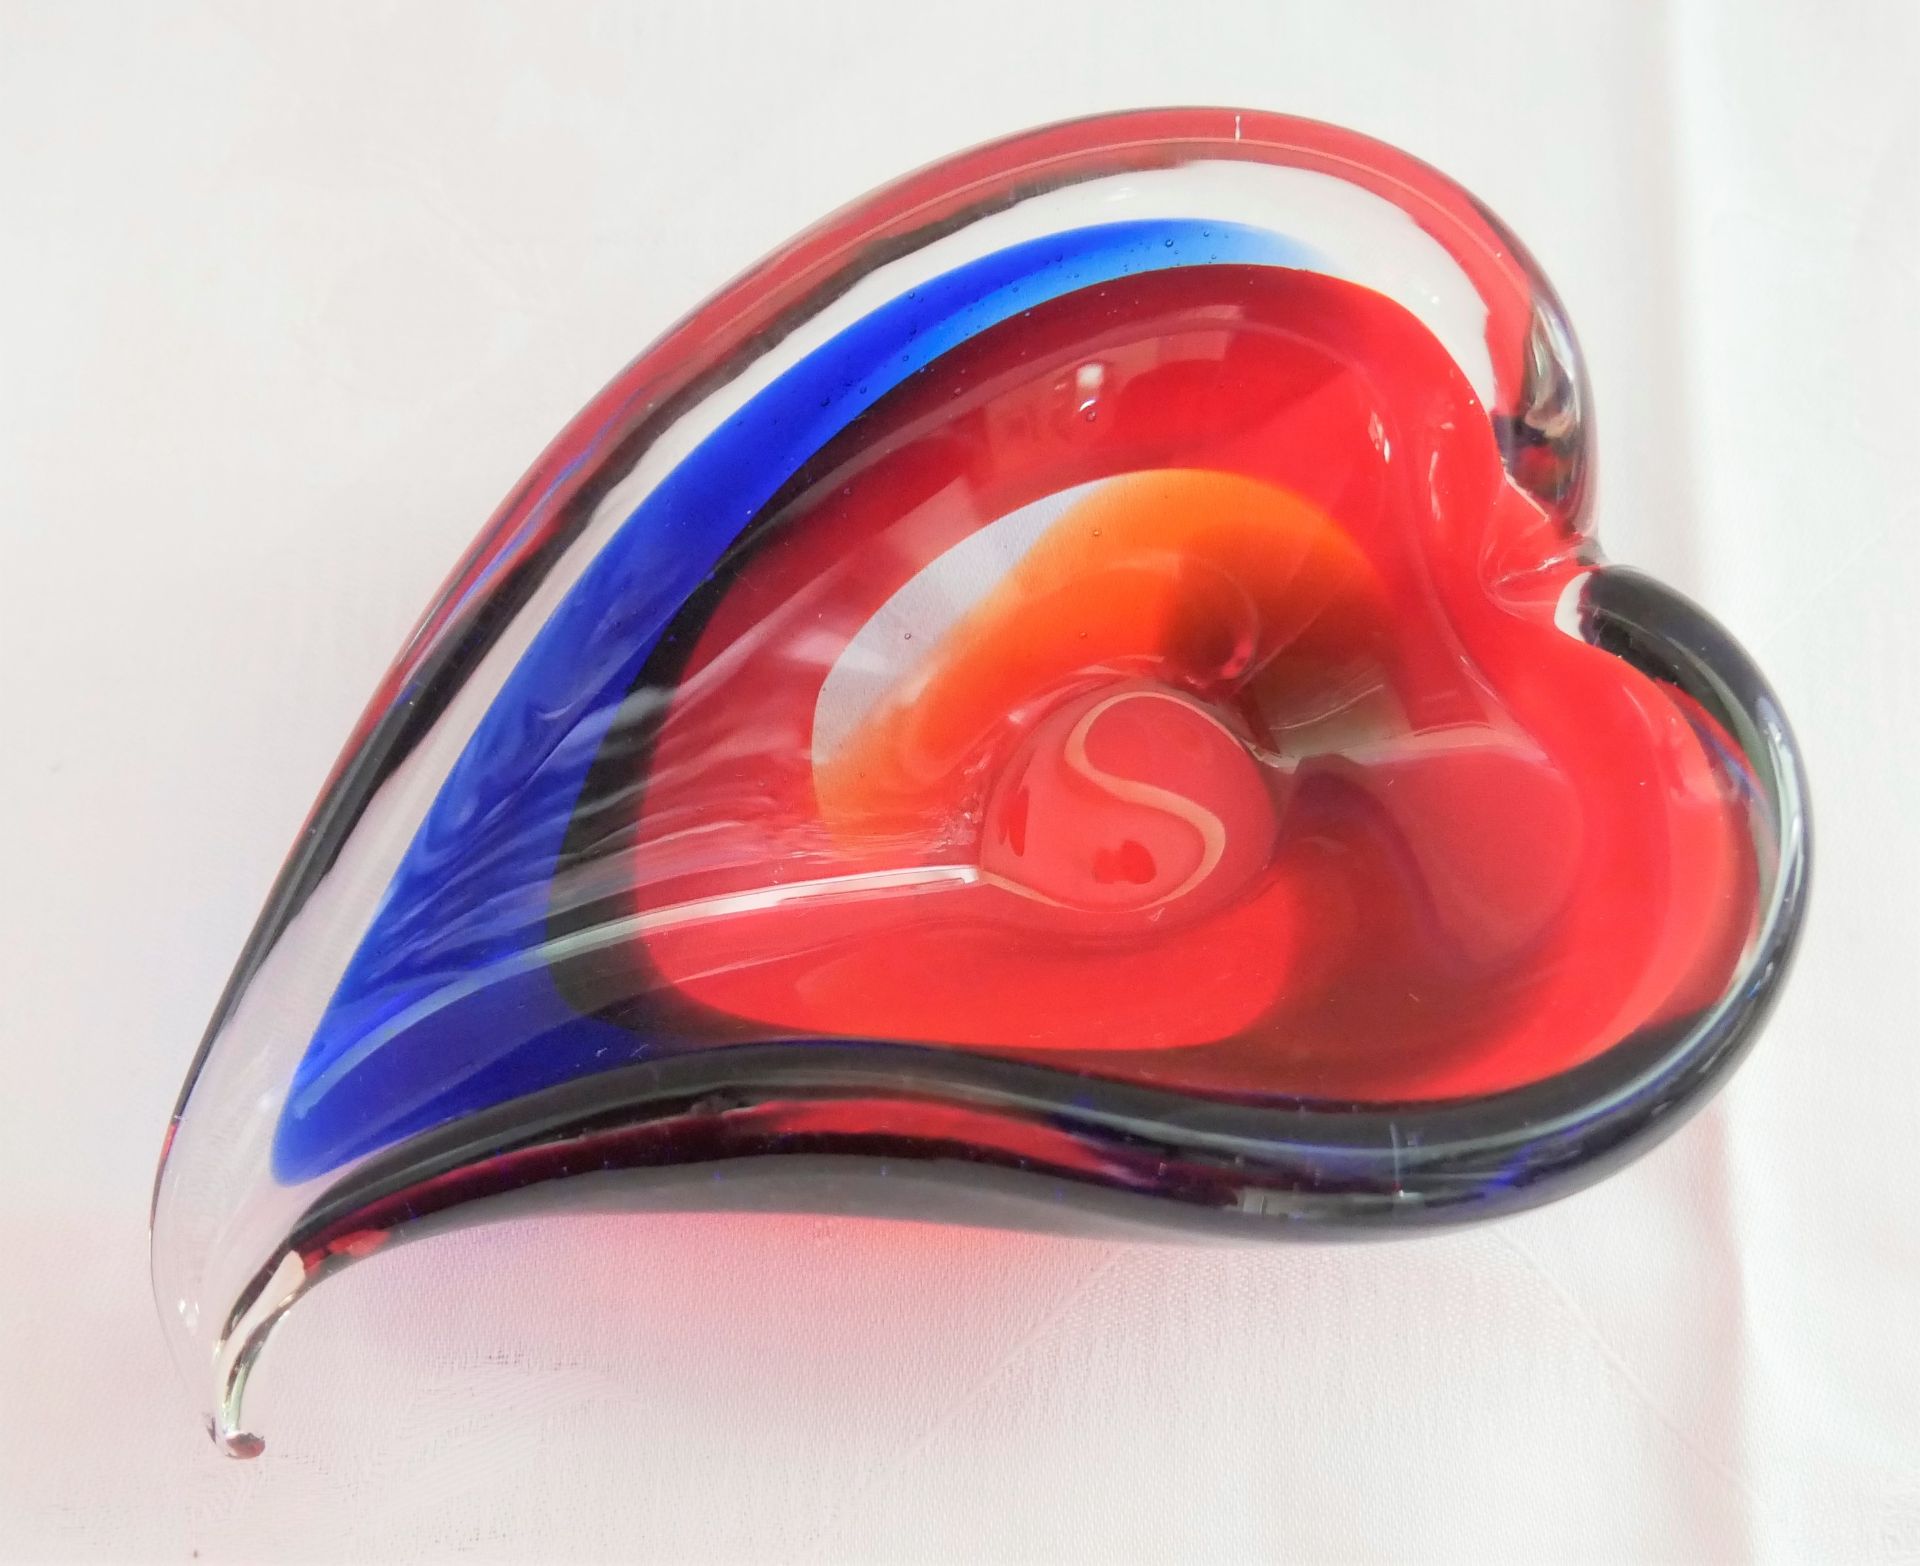 2 Teile Glas, dabei eine Schale in Herzform rot/Klarglas sowie eine Schale blau/Klarglas. - Image 3 of 3